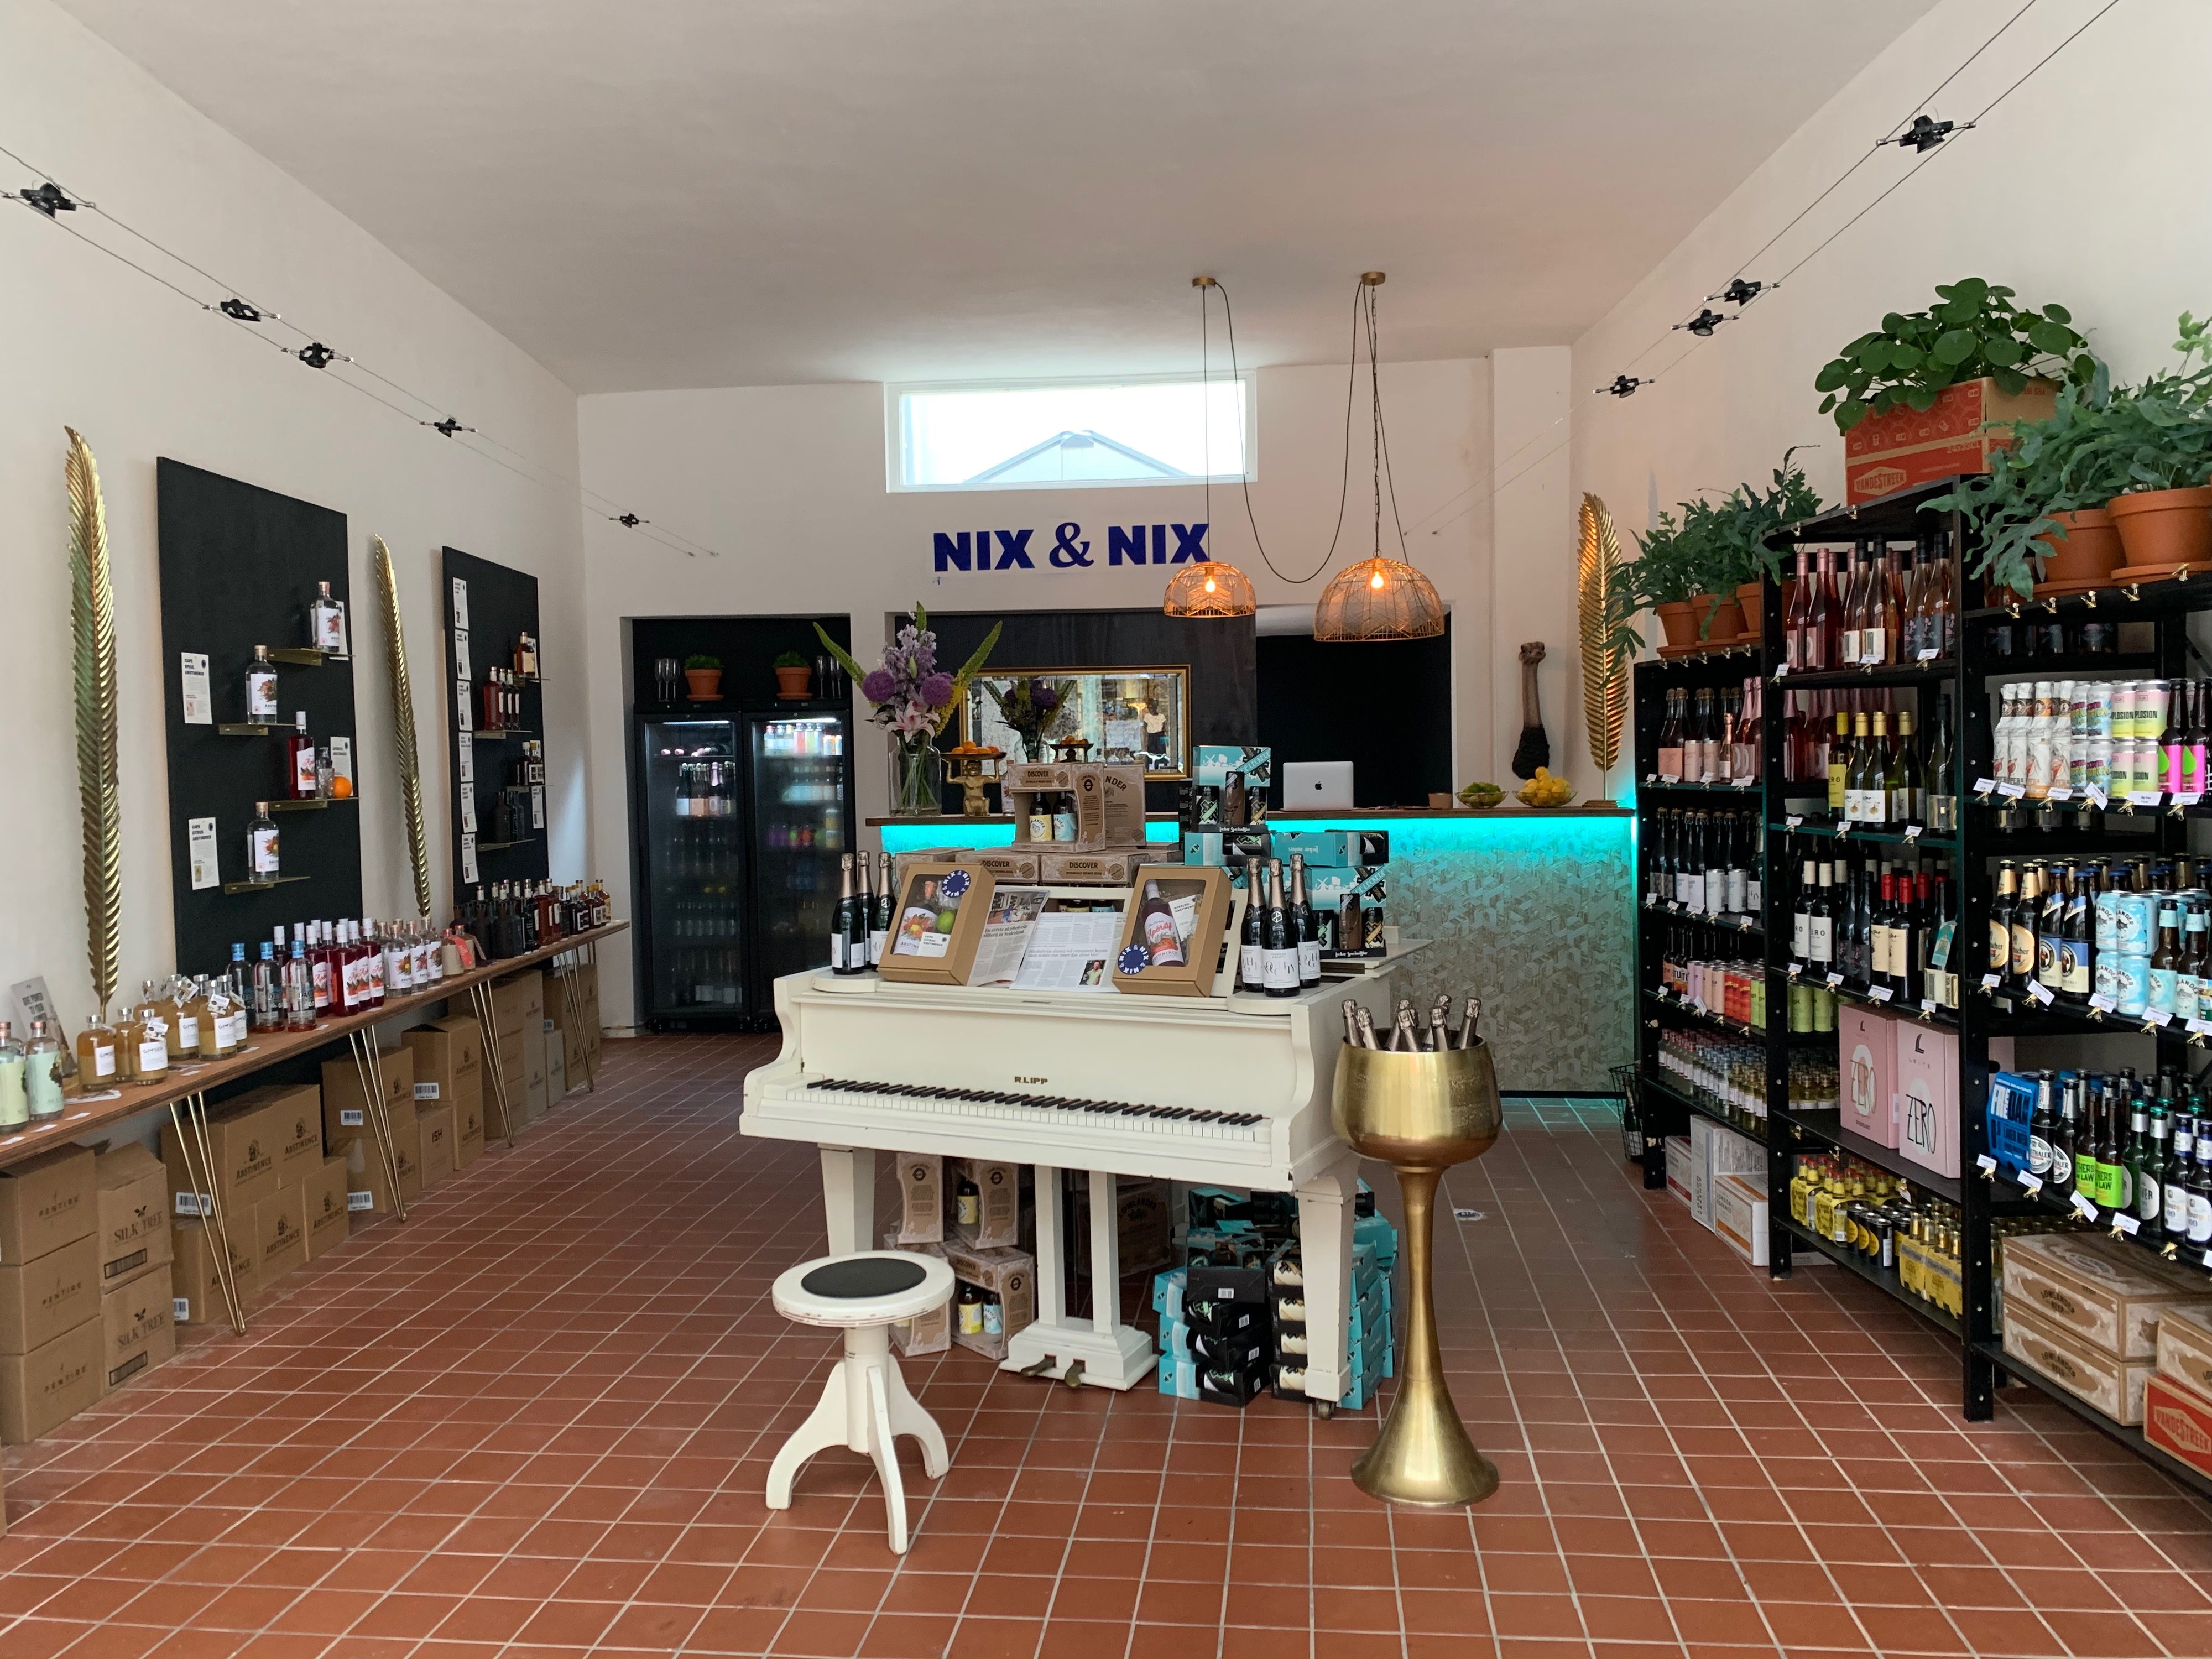 NIX & NIX Winkel in Haarlem, de eerste alcoholvrije slijter in Nederland.